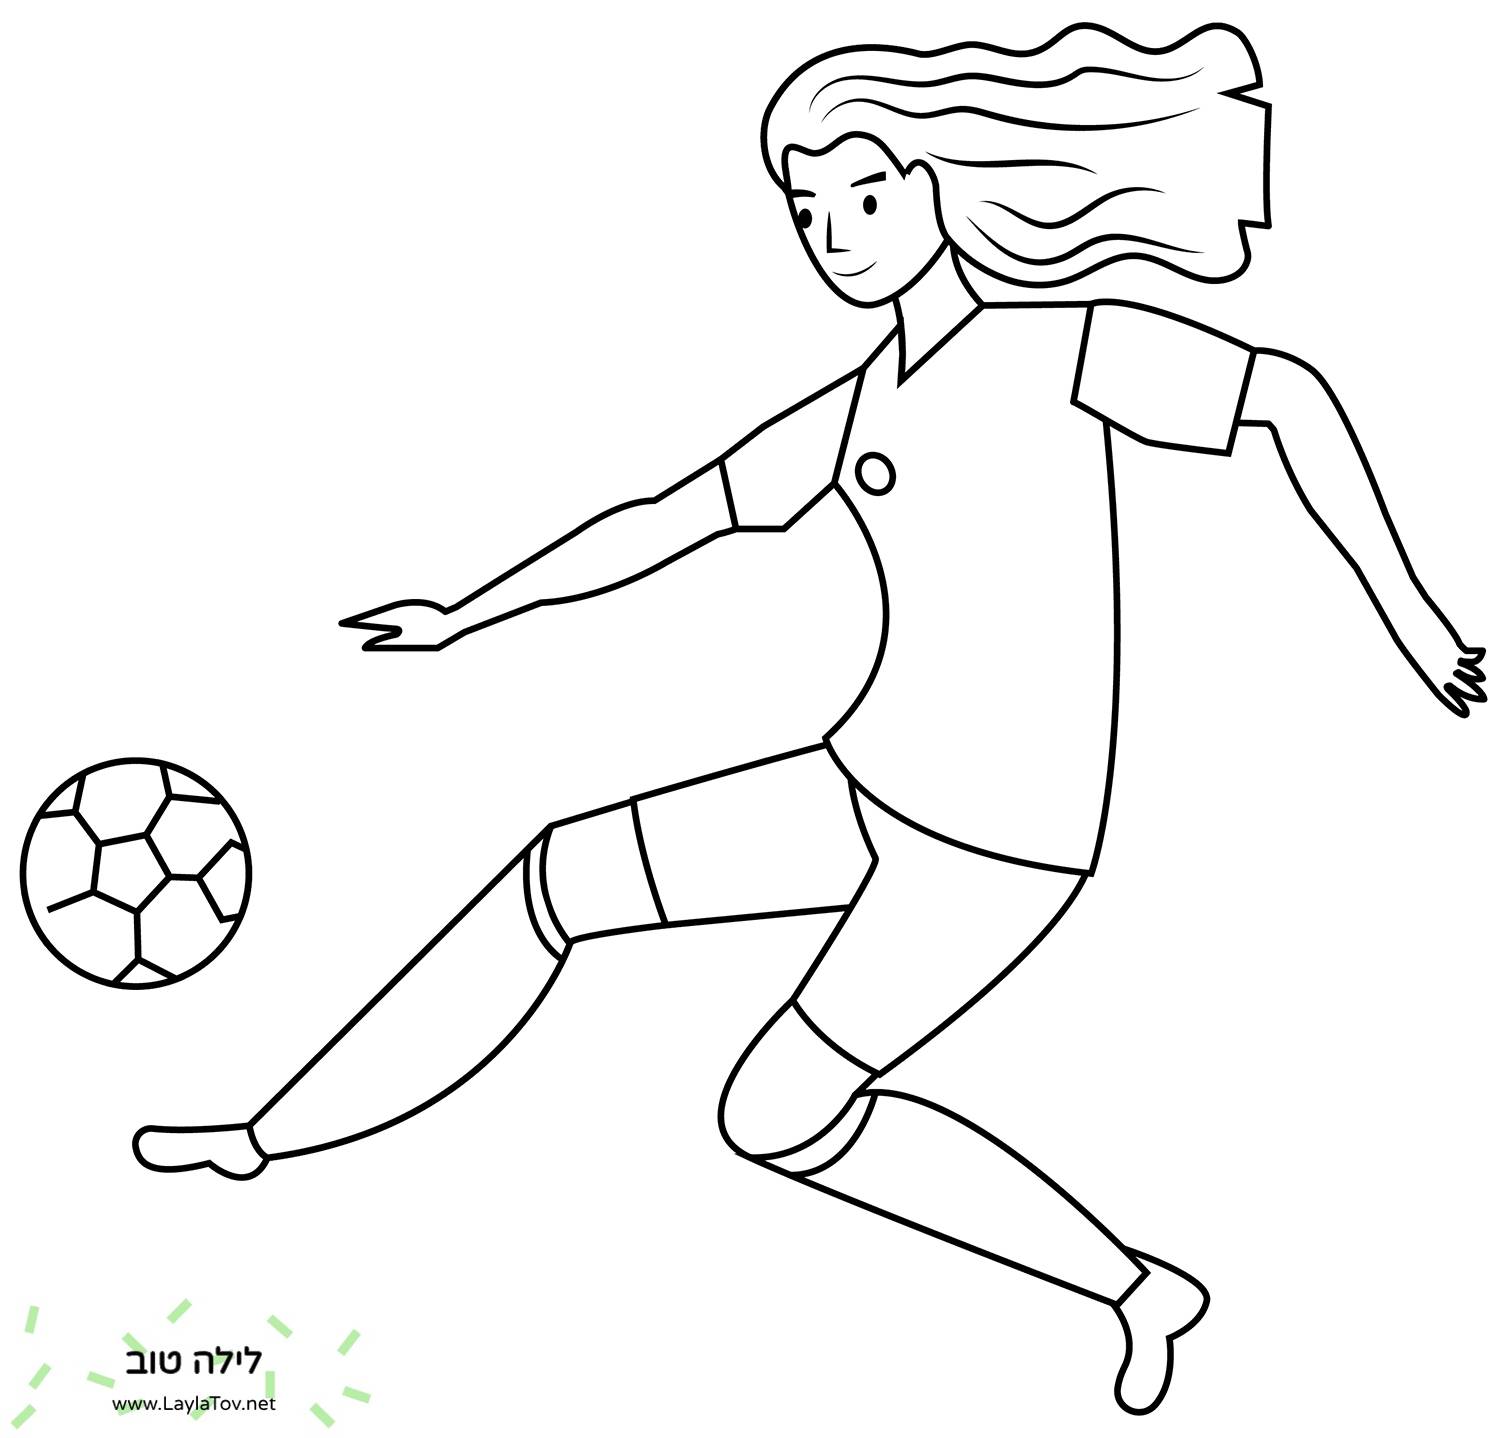 שחקנית כדורגל בנות